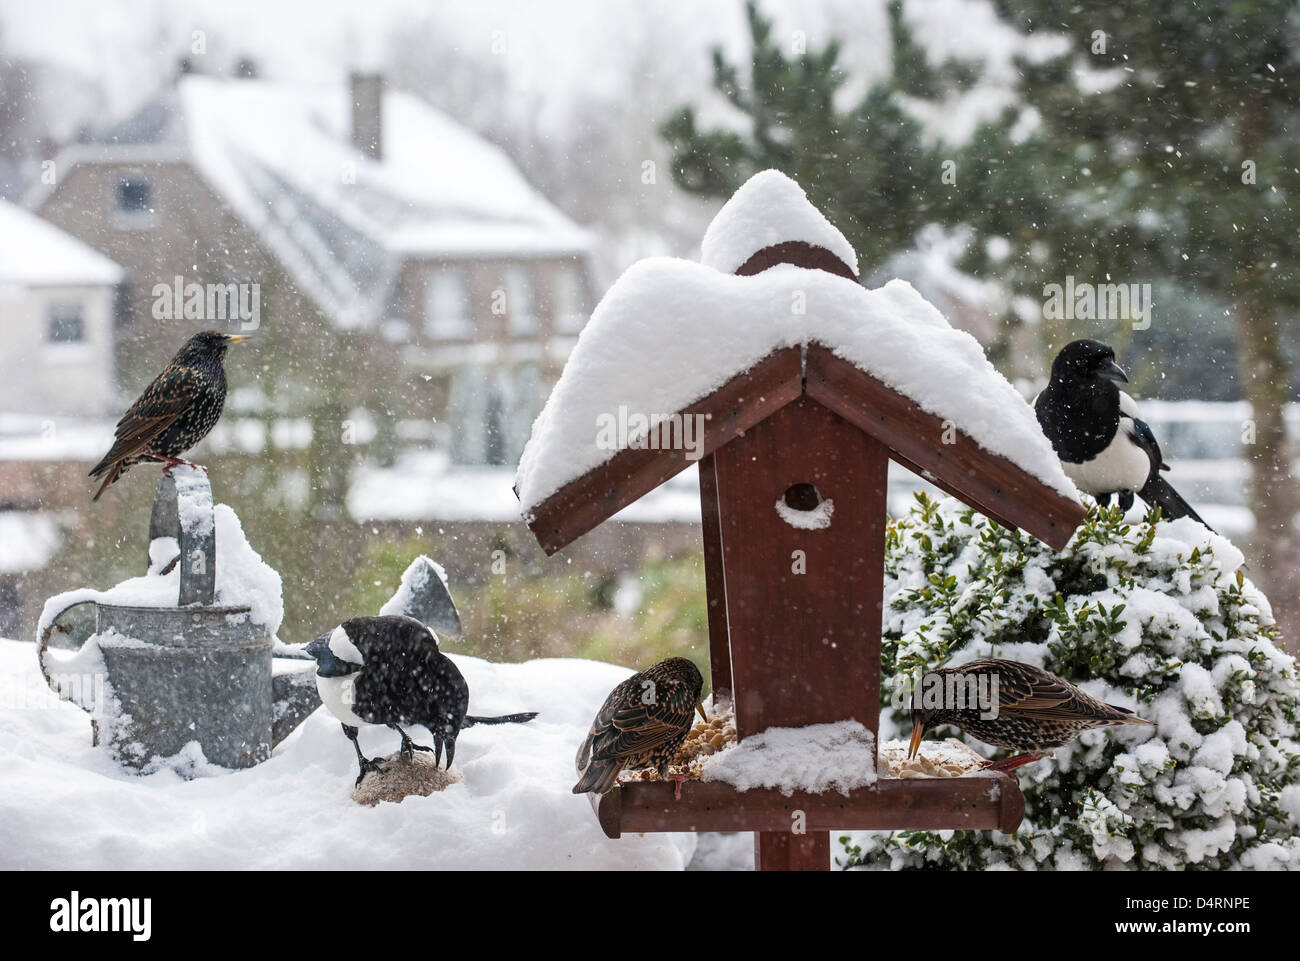 Les étourneaux sansonnets (Sturnus vulgaris) et européennes Pie bavarde (Pica pica) à mangeoire pendant en jardin dans la neige en hiver Banque D'Images